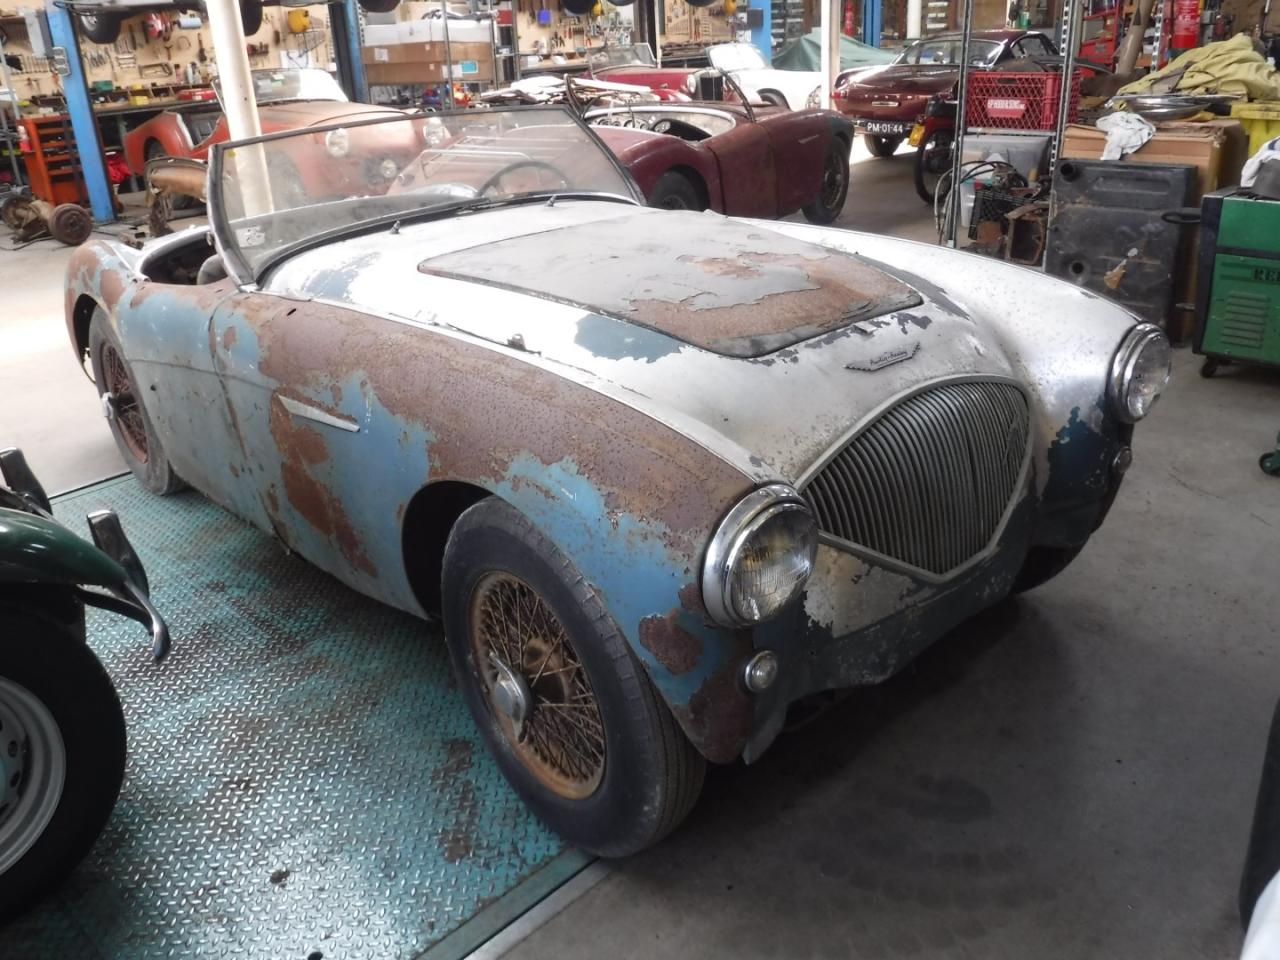 1955 Austin - Healey 100/4 blue to restore